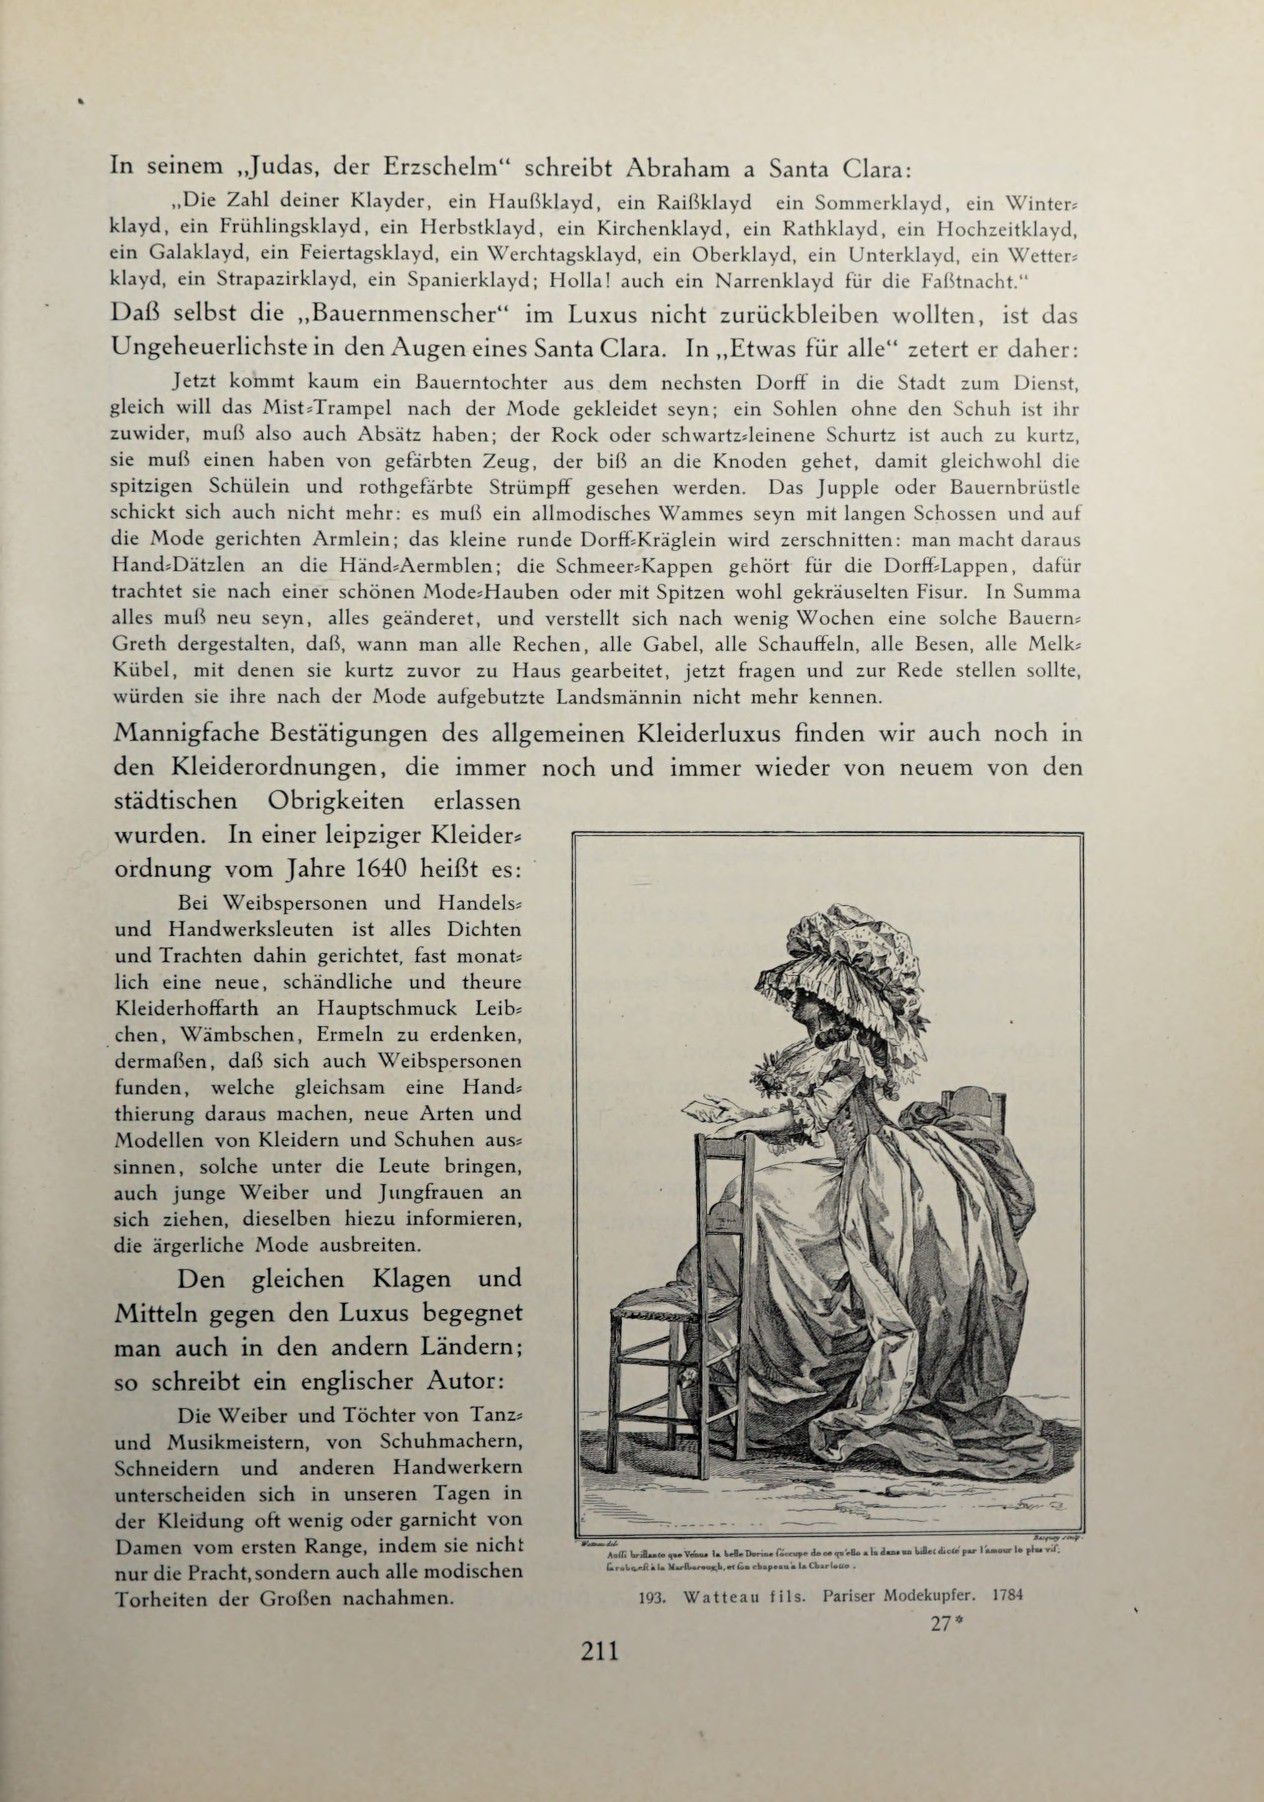 [Eduard Fuchs] Illustrierte Sittengeschichte vom Mittelalter bis zur Gegenwart: Bd. 2. and Ergänzungsband. Die galante Zeit [German] 310